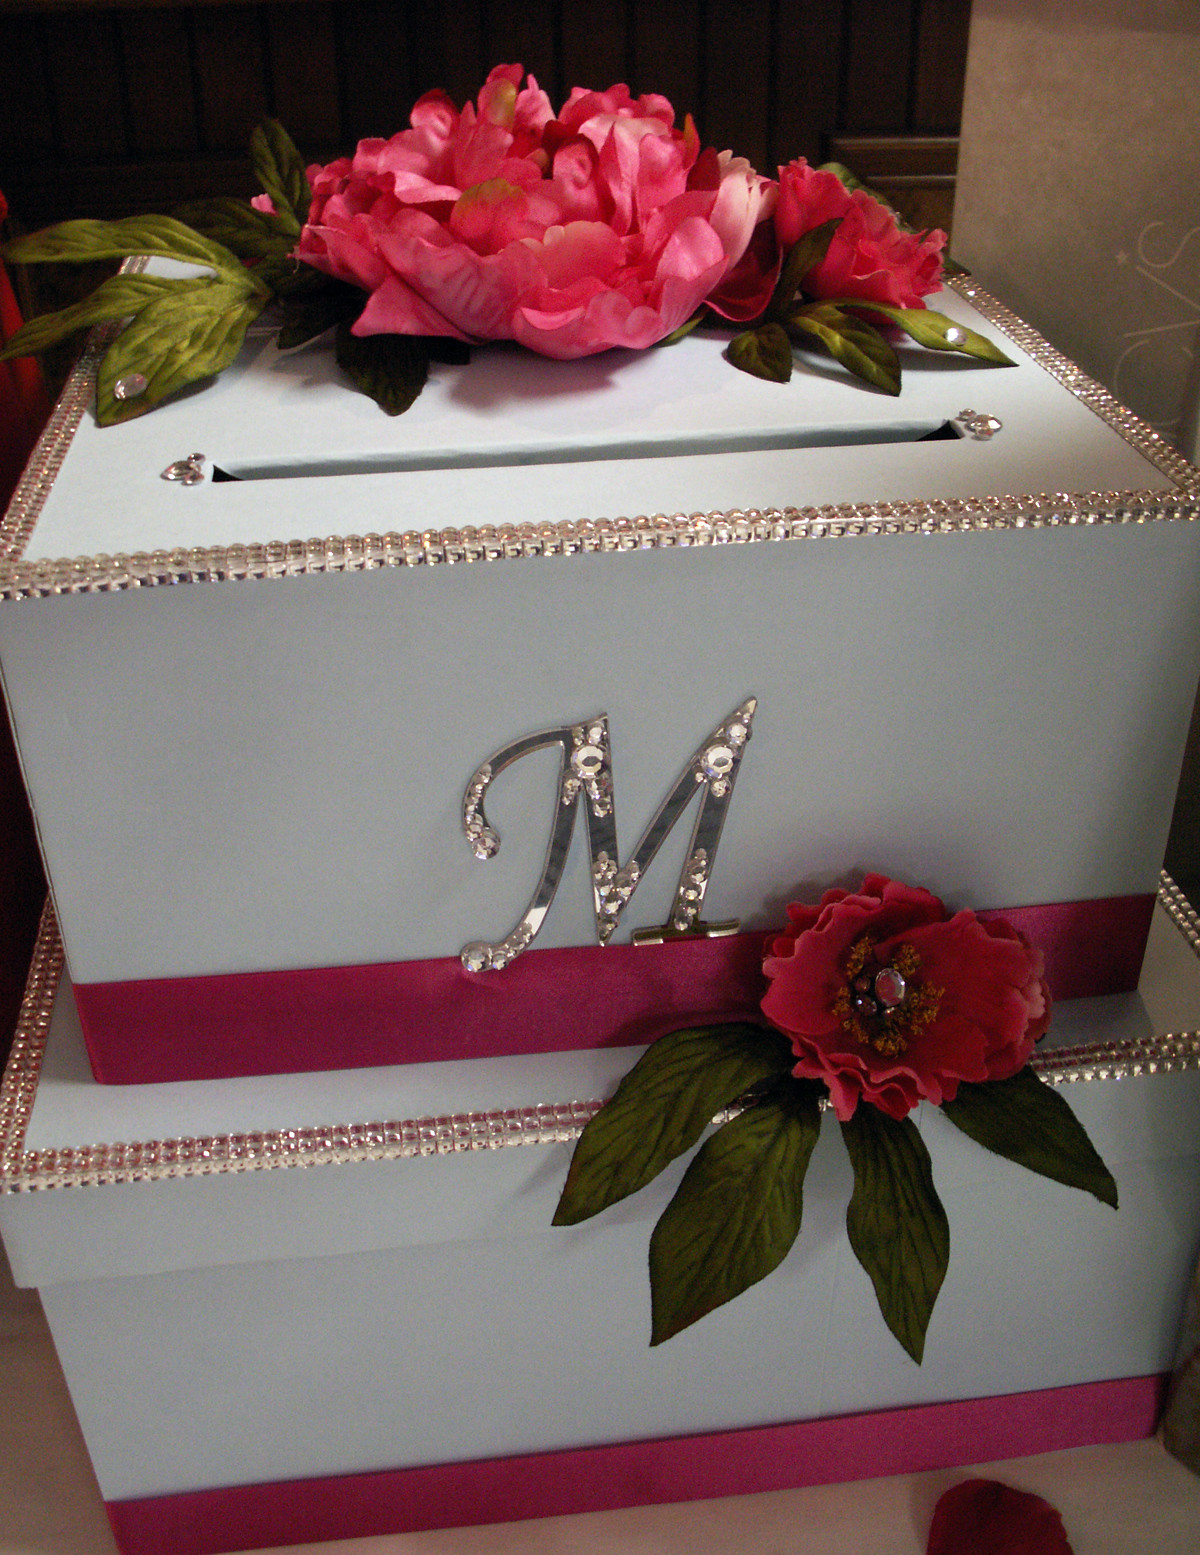 Wedding Gift Box Ideas
 DIY Wedding Card Box Project